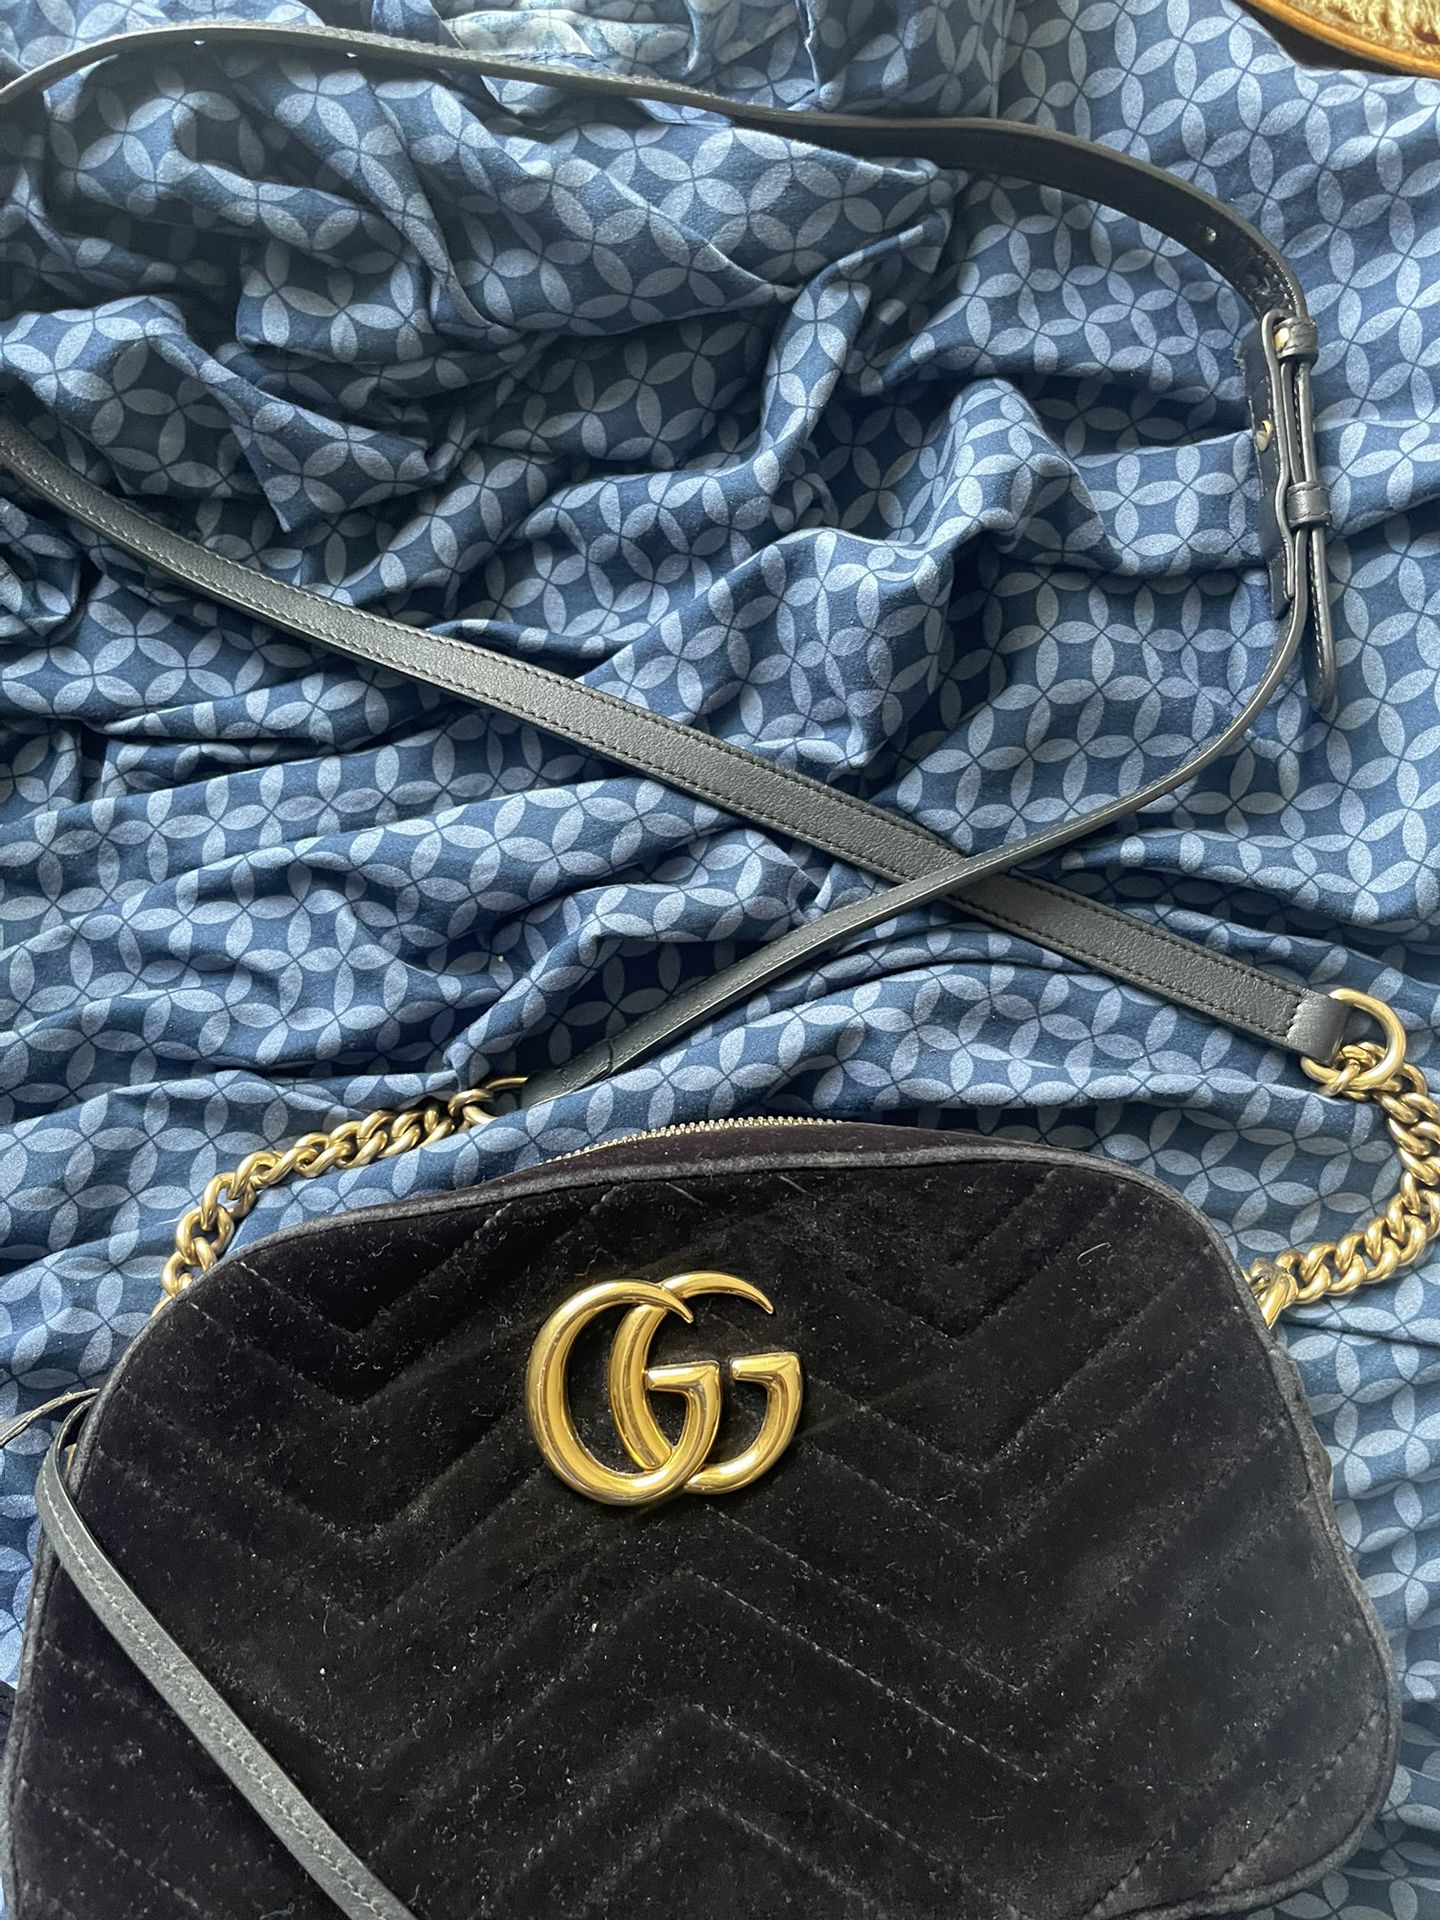 Women’s Gucci Bag 